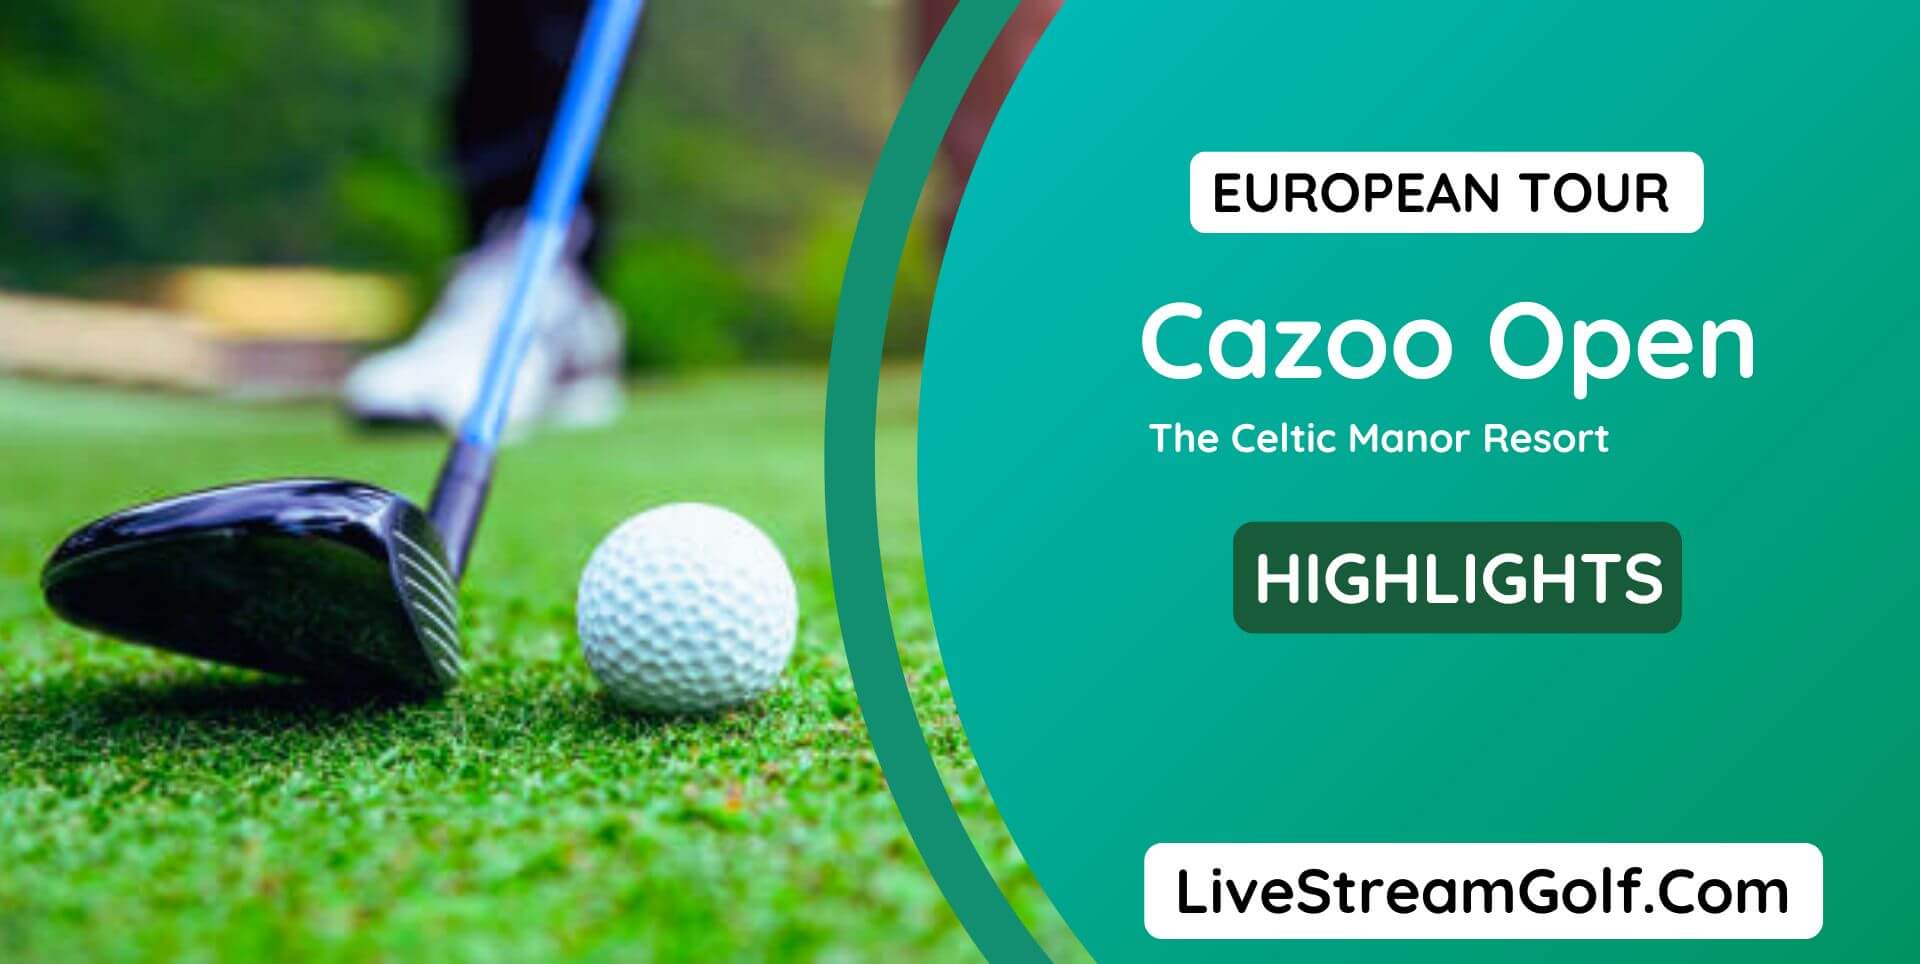 Cazoo Open Day 2 Highlights European Tour 2022